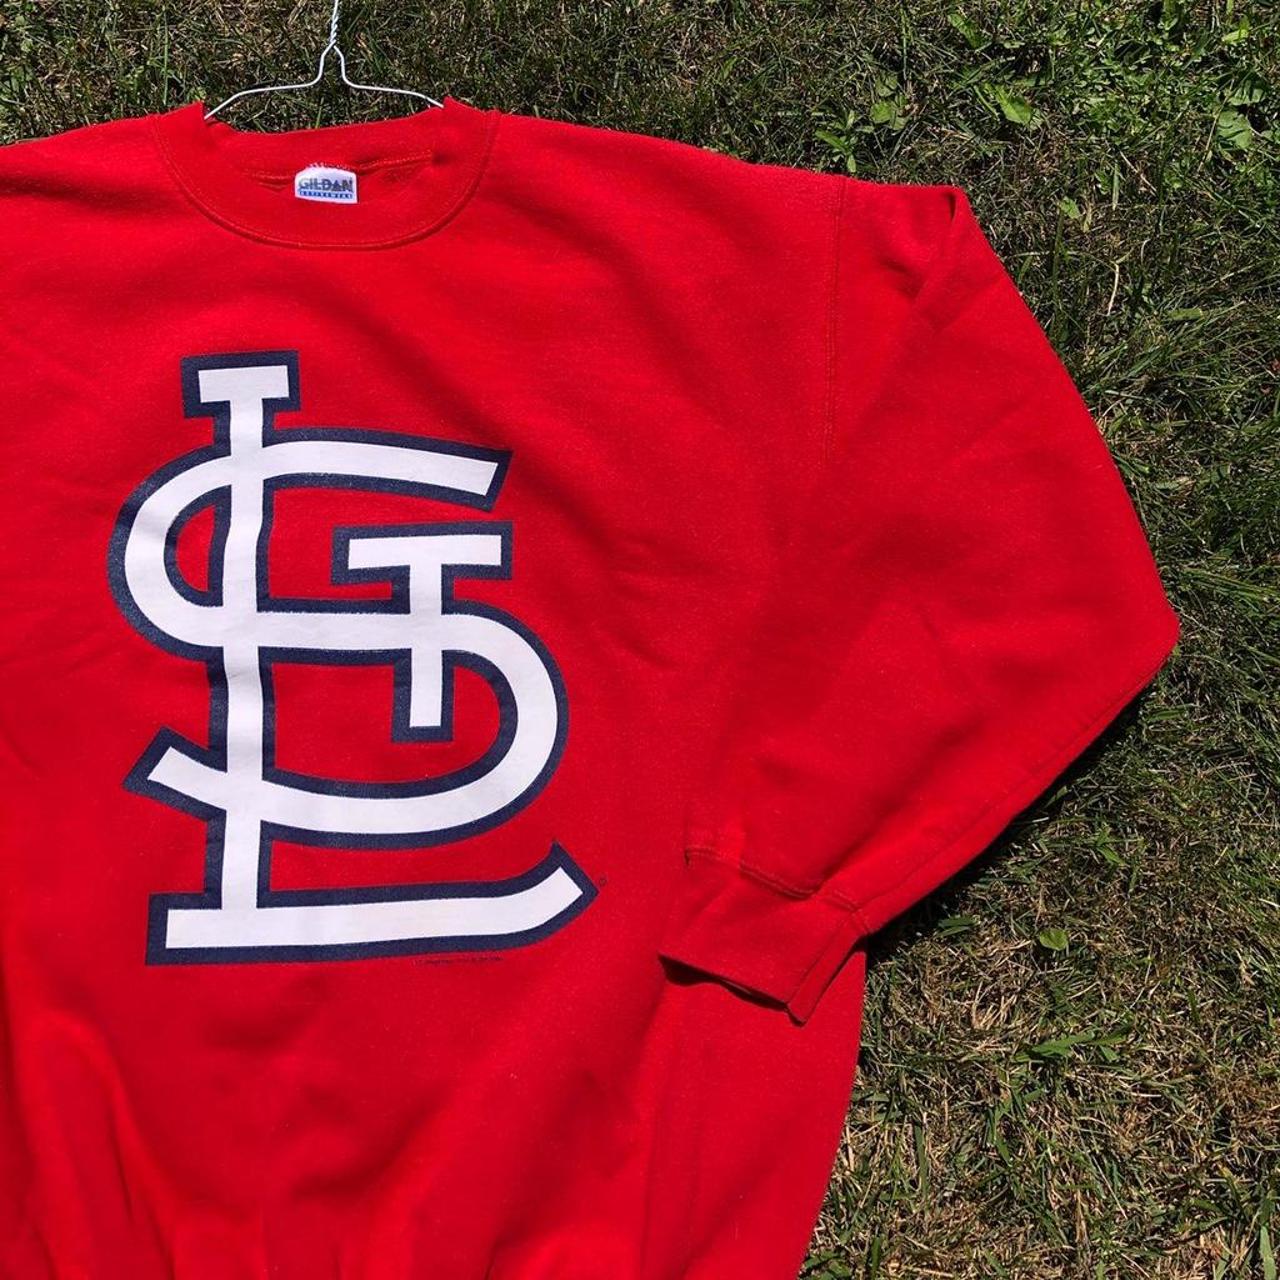 Red adidas St. Louis cardinals baseball jersey Kids - Depop